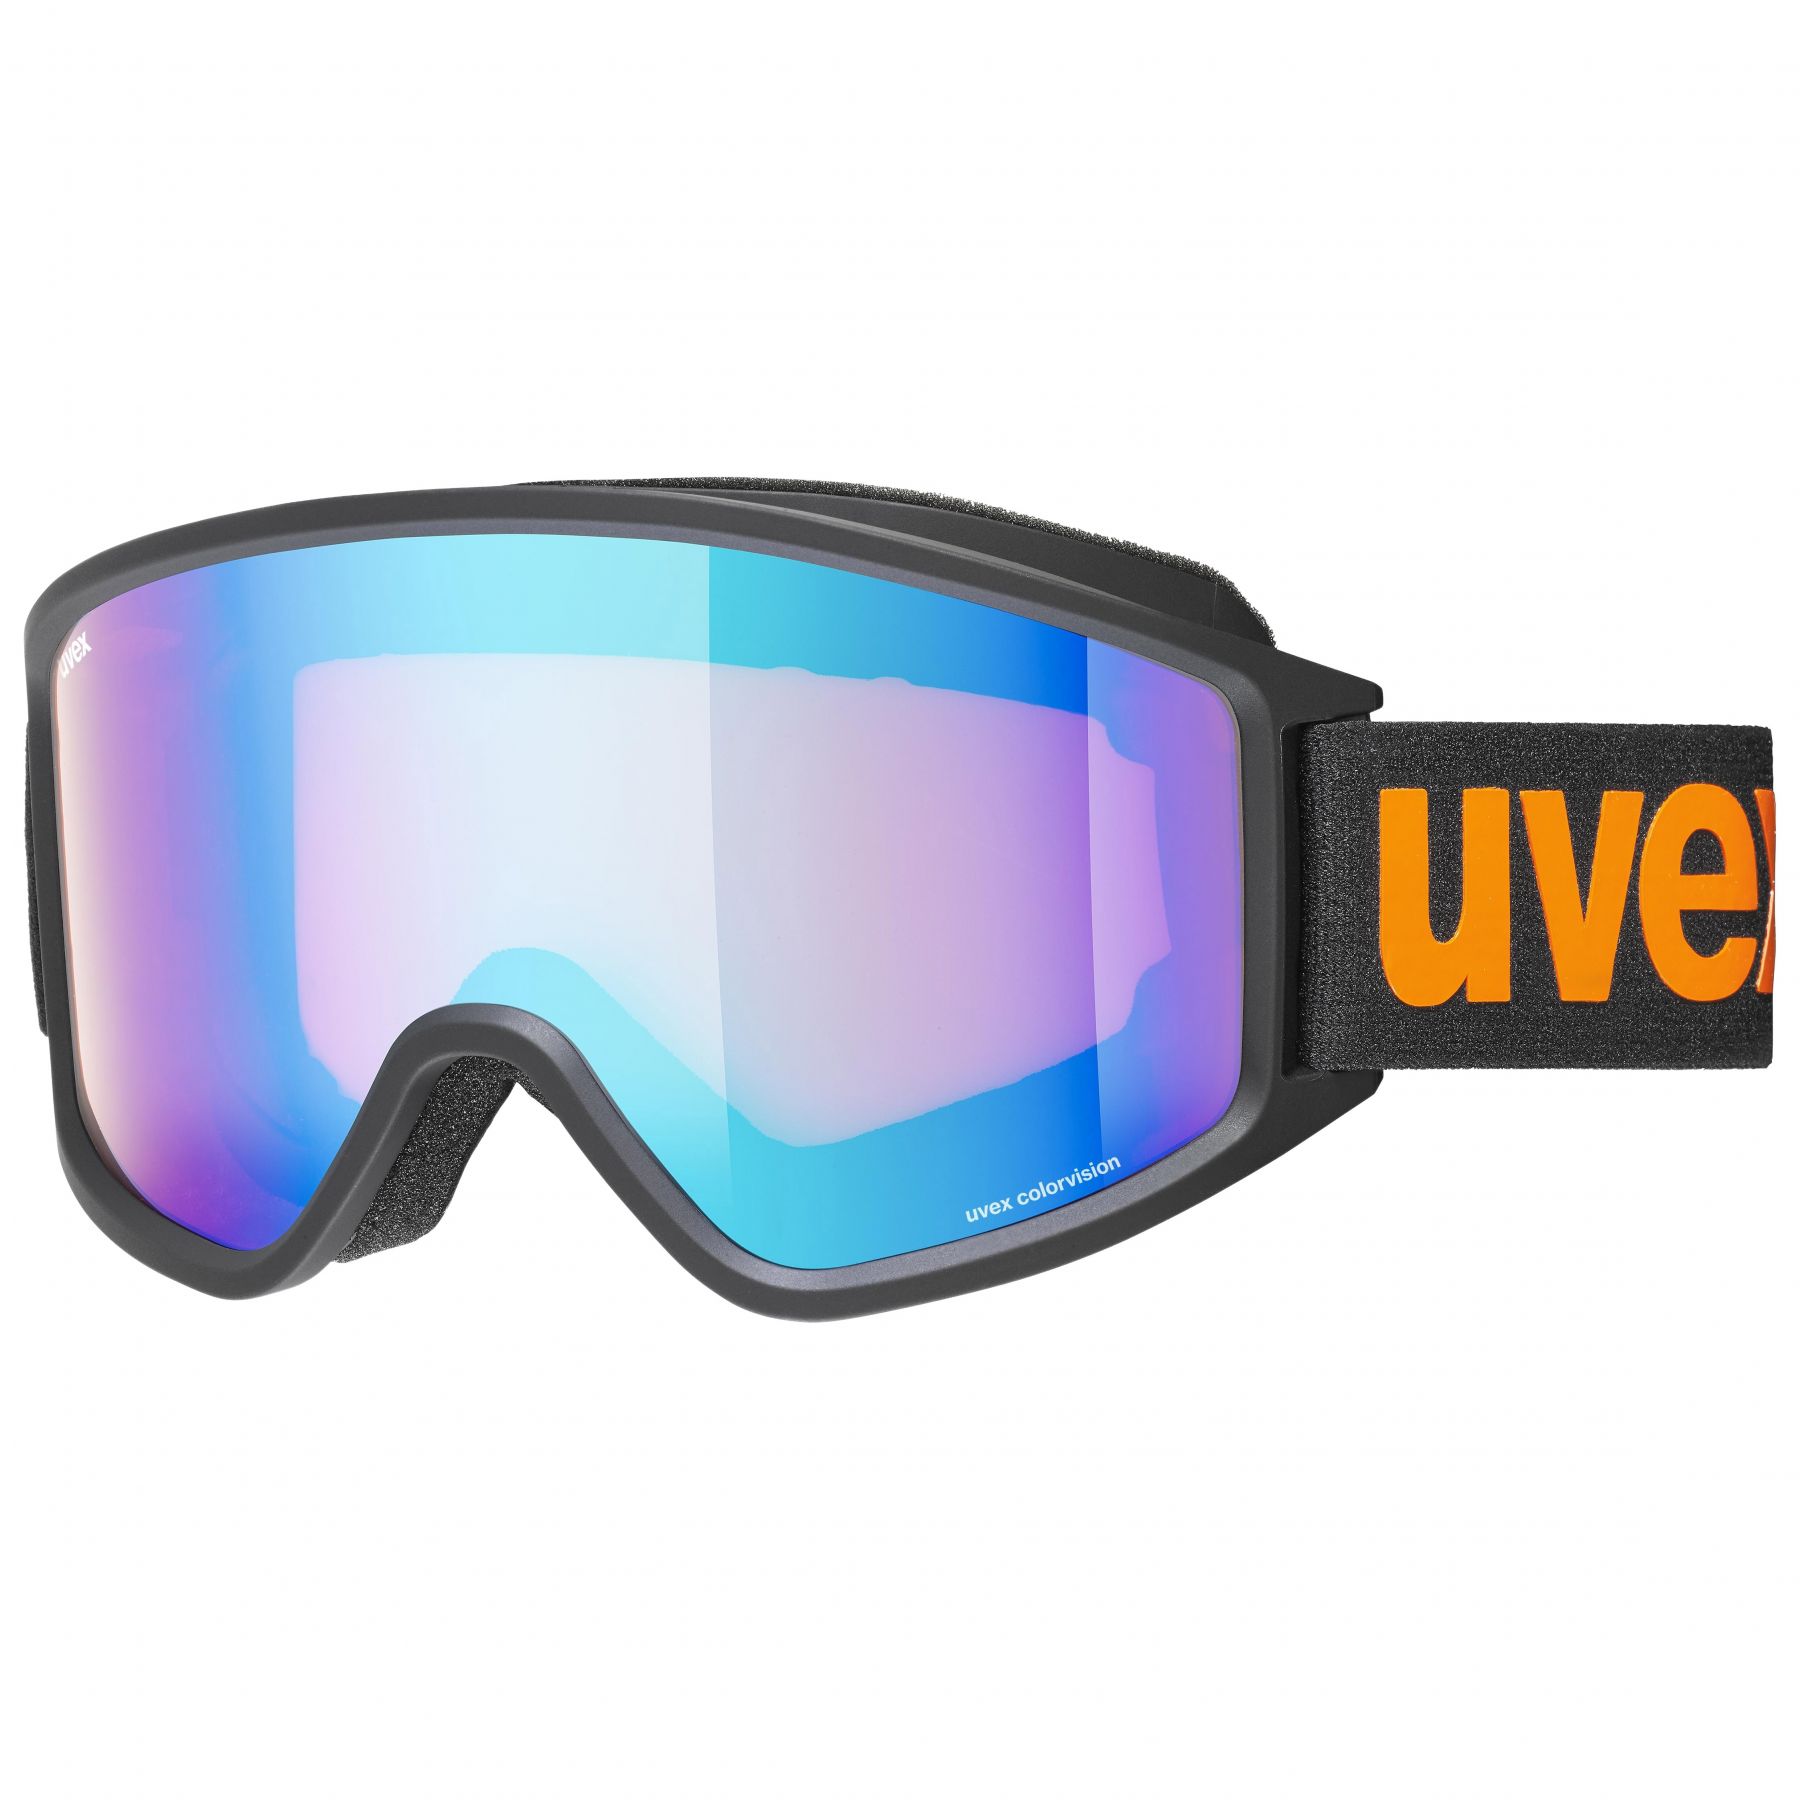 Billede af Uvex g.gl. 3000 CV, skibriller, sort/orange